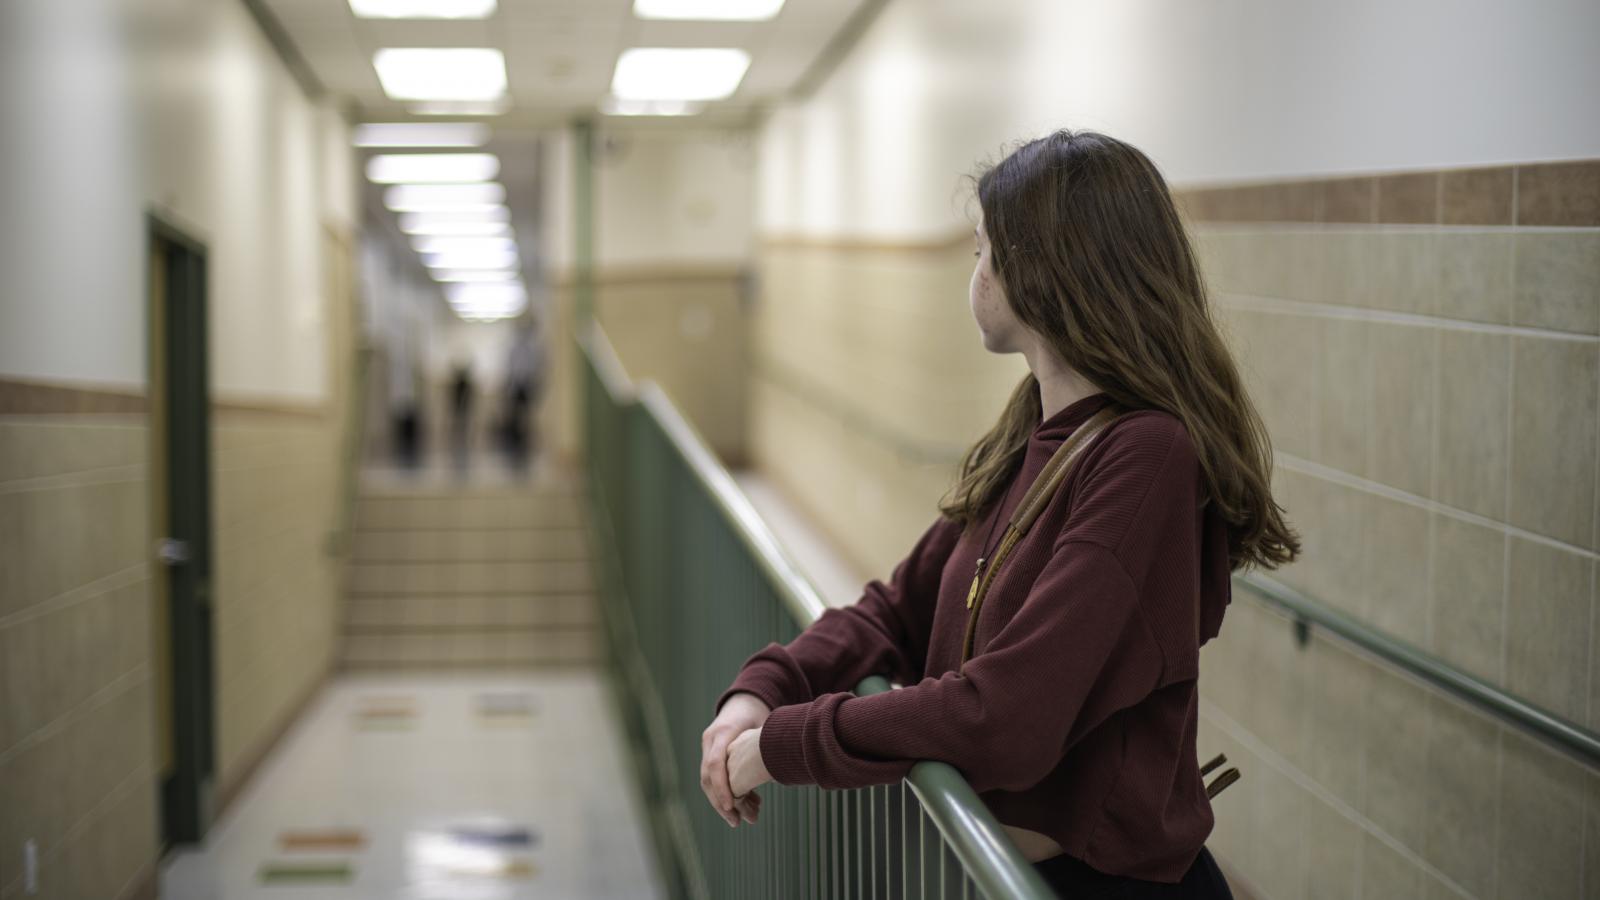 Teenage student standing in empty school hallway